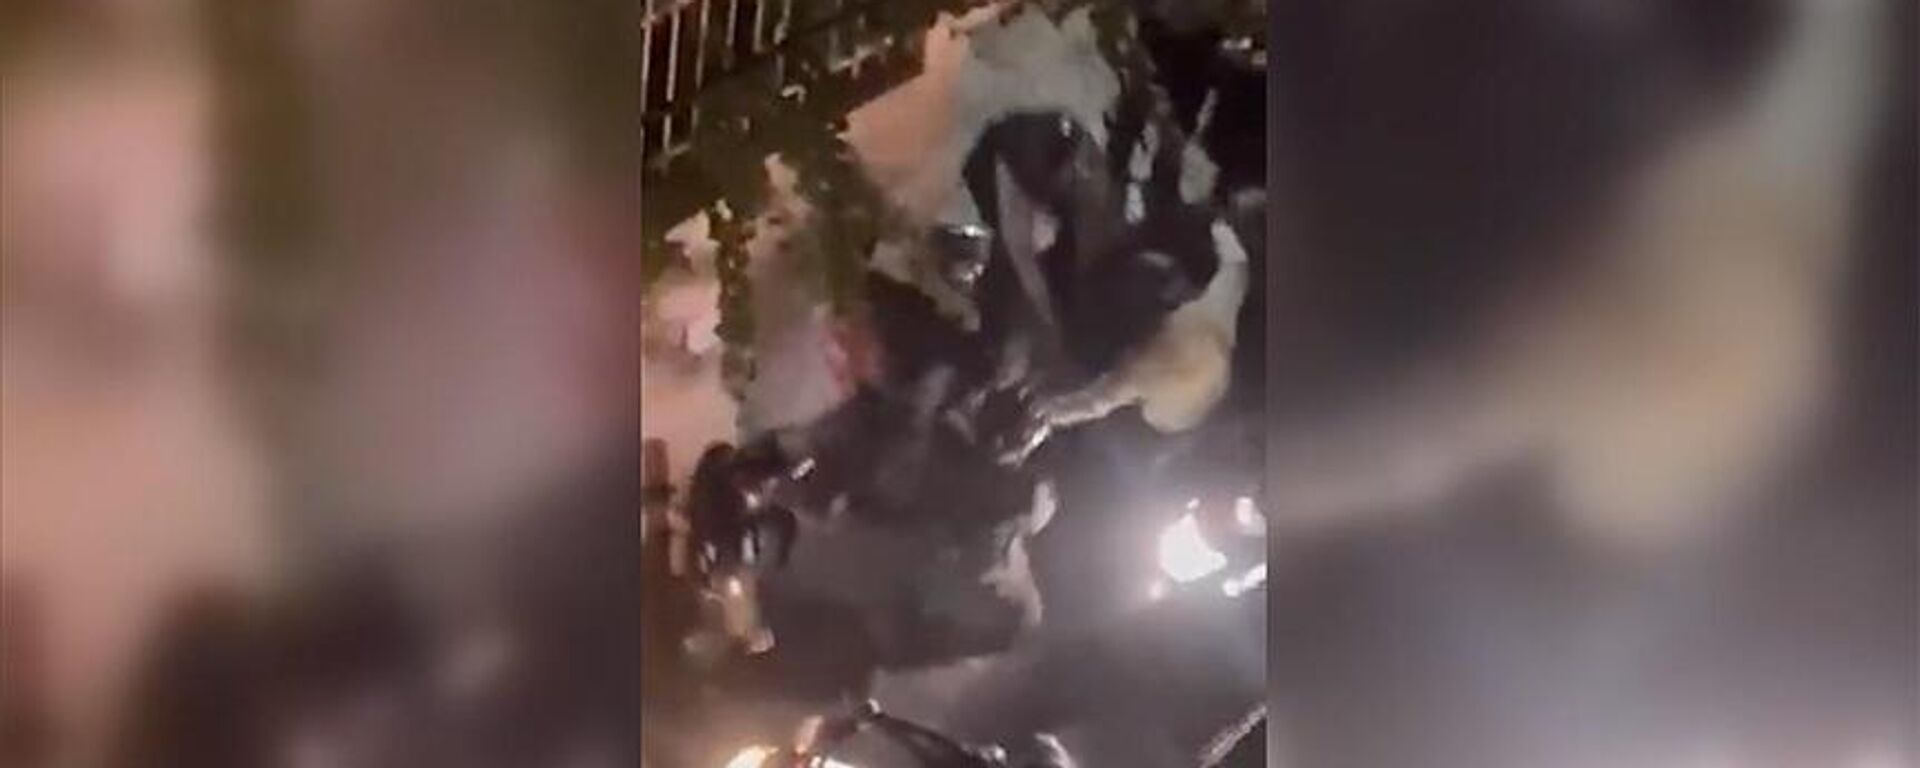 İran'da Mahsa Emini protestoları: Polislerin bir göstericiyi 'yargısız infaz ettiği' sonucu çıkarılan video - Sputnik Türkiye, 1920, 02.11.2022